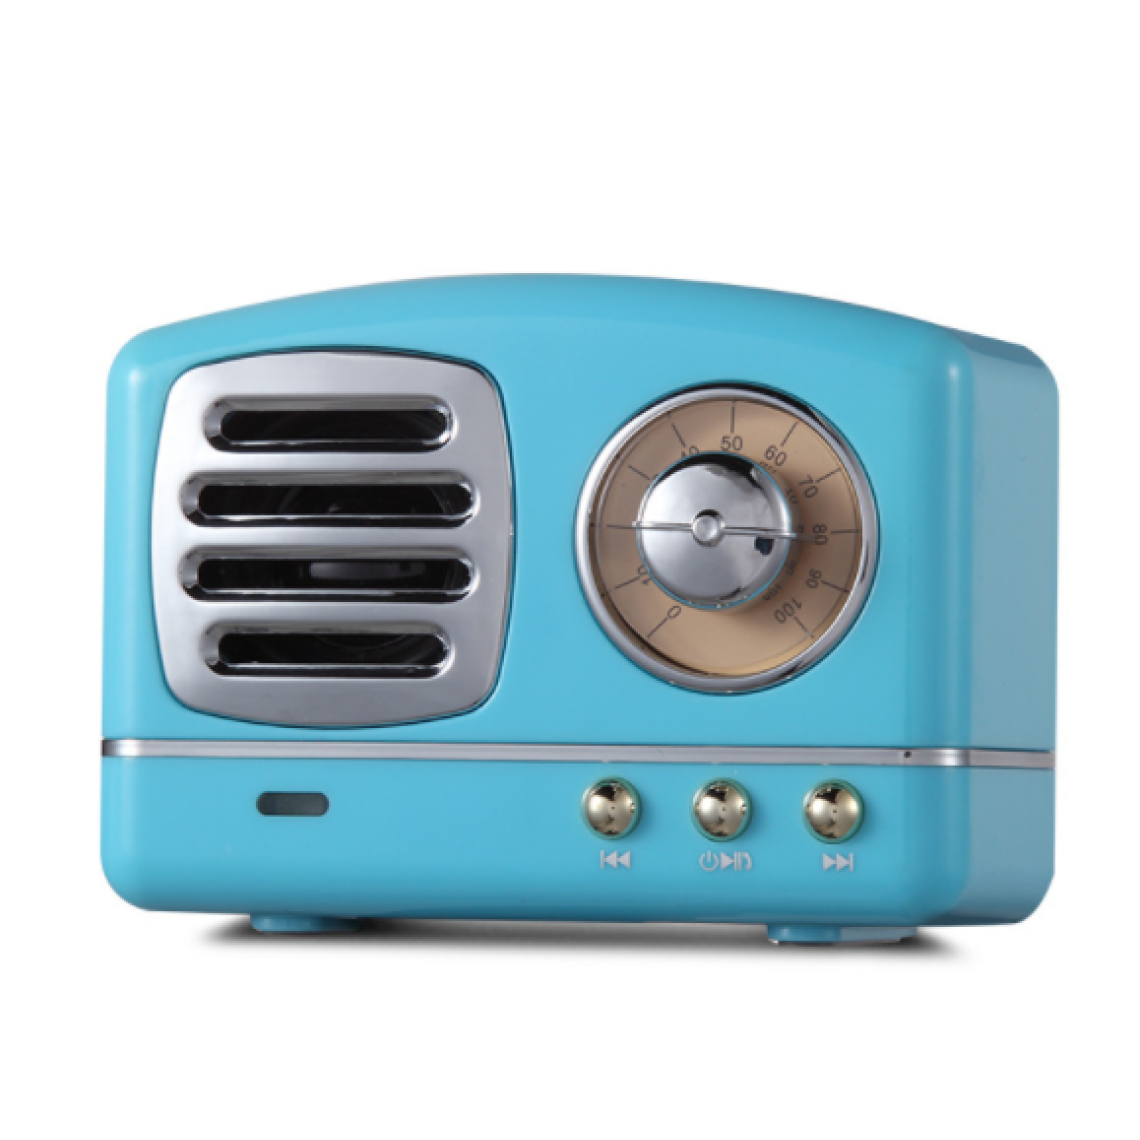 Chrono - Mini haut-parleur Bluetooth rétro portable, style classique à l'ancienne, haut-parleur stéréo subwoofer, microphone intégré, appel mains libres, le meilleur cadeau pour la famille et les amis(Bleu) - Enceintes Hifi